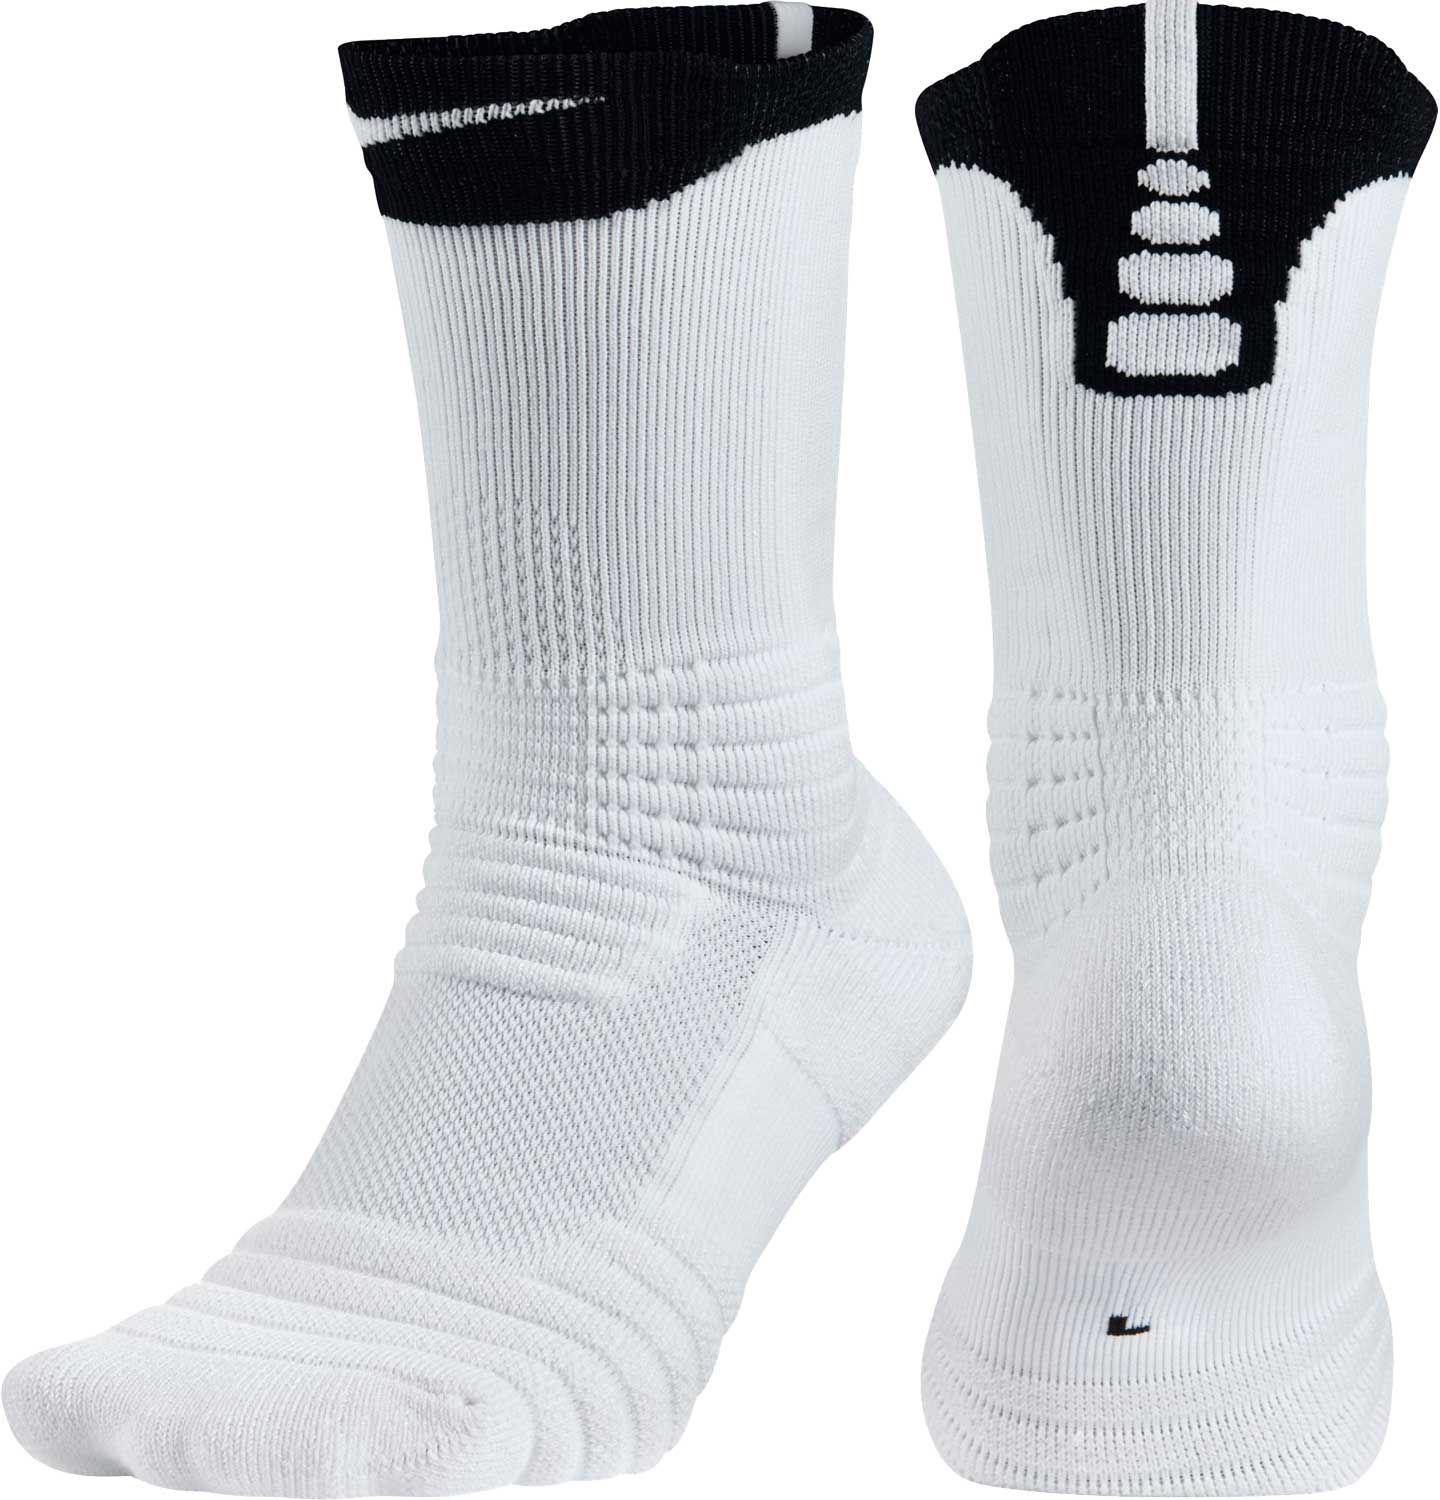 black and white elite socks